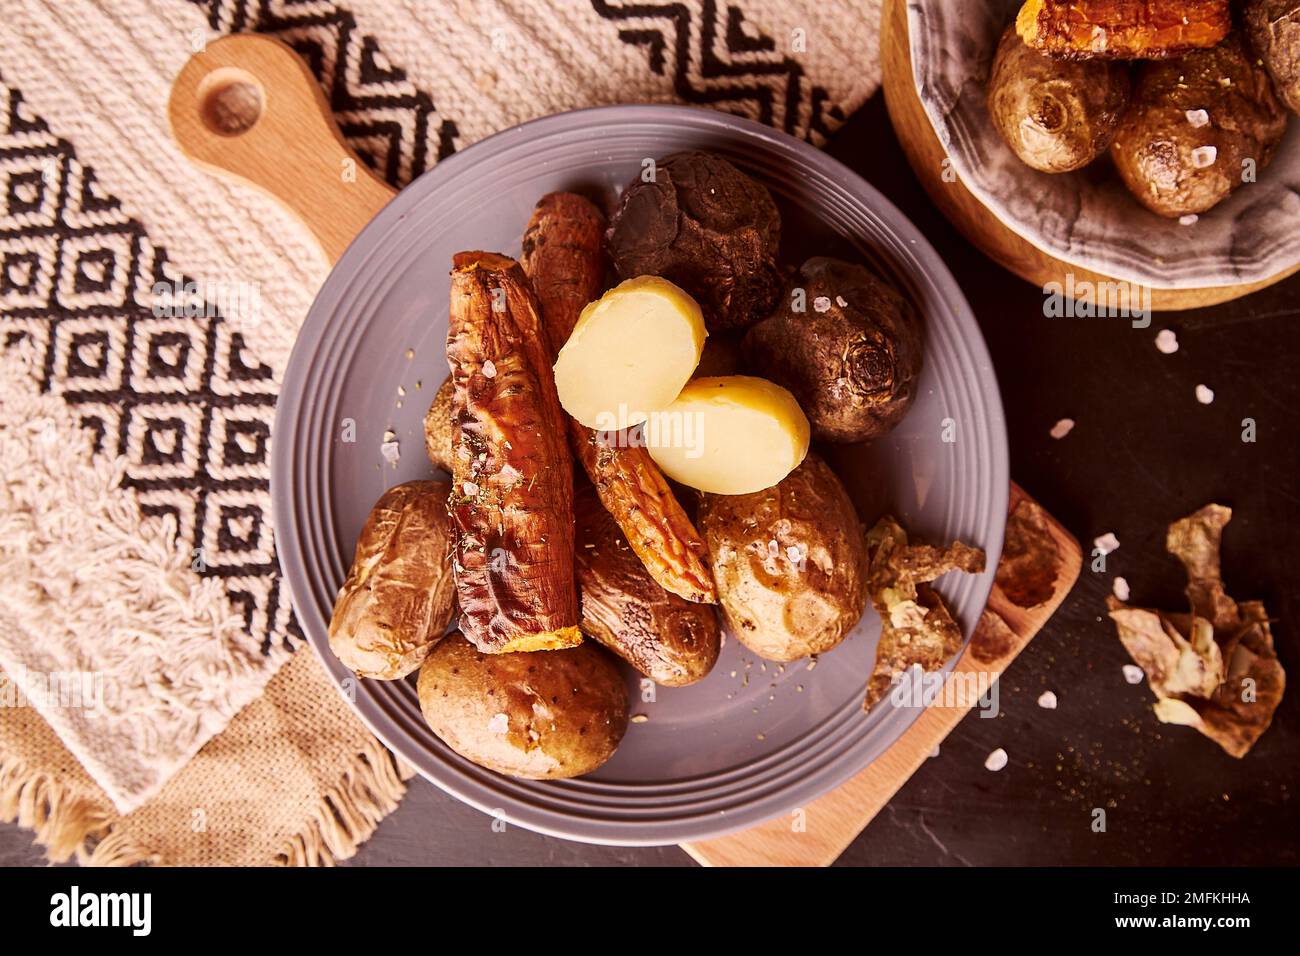 Ästhetik rustikales gegrilltes gebackenes Gemüse - Kartoffeln, Karotten, Rote Bete. Gesundes Essen. Vollnahrung, DASH, mediterrane Ernährung mit natürlichem Hintergrund Stockfoto